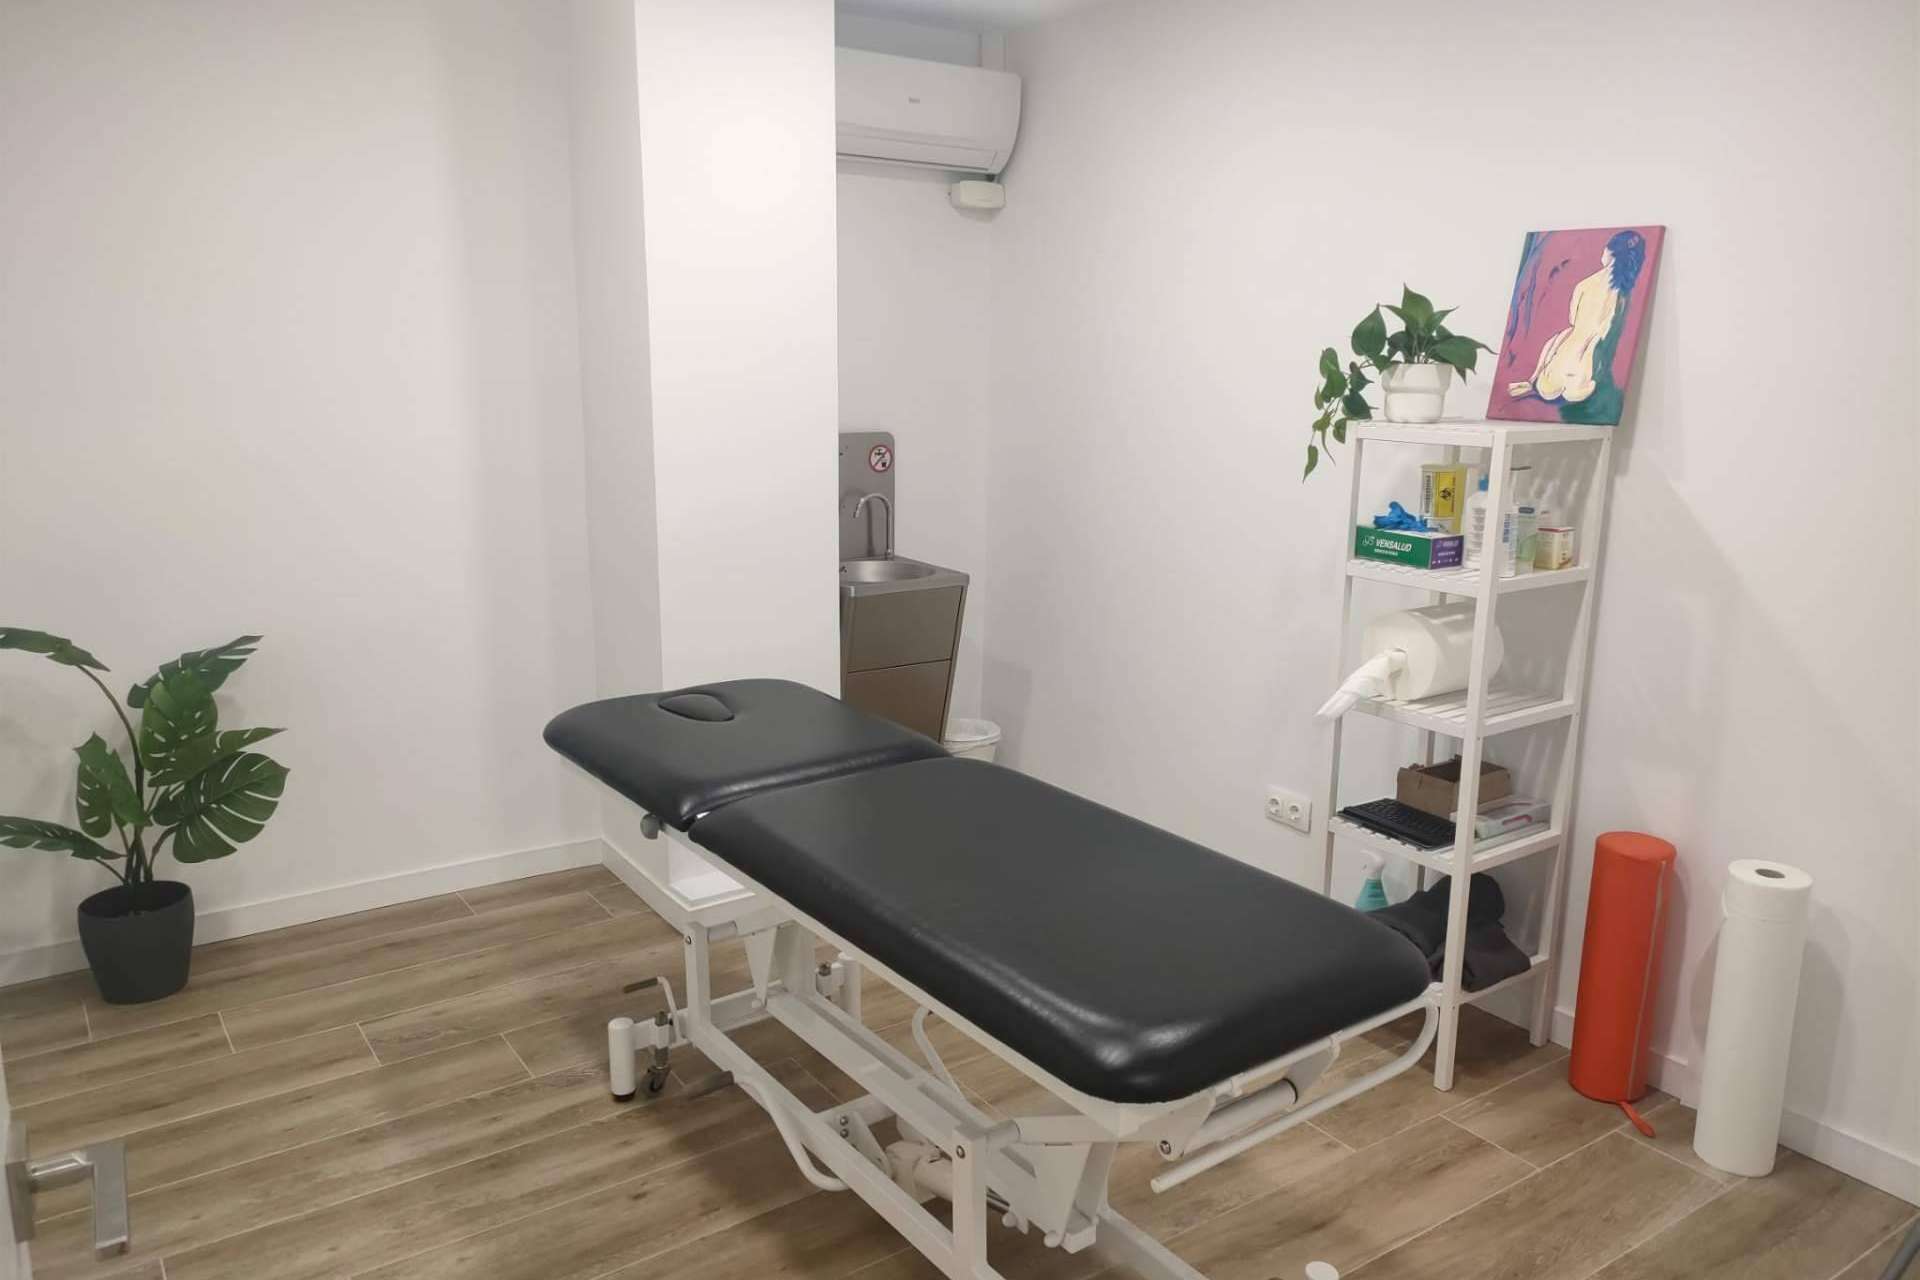 Vivir sin dolor. Clínica Axial abre un nuevo centro de fisioterapia en Barcelona